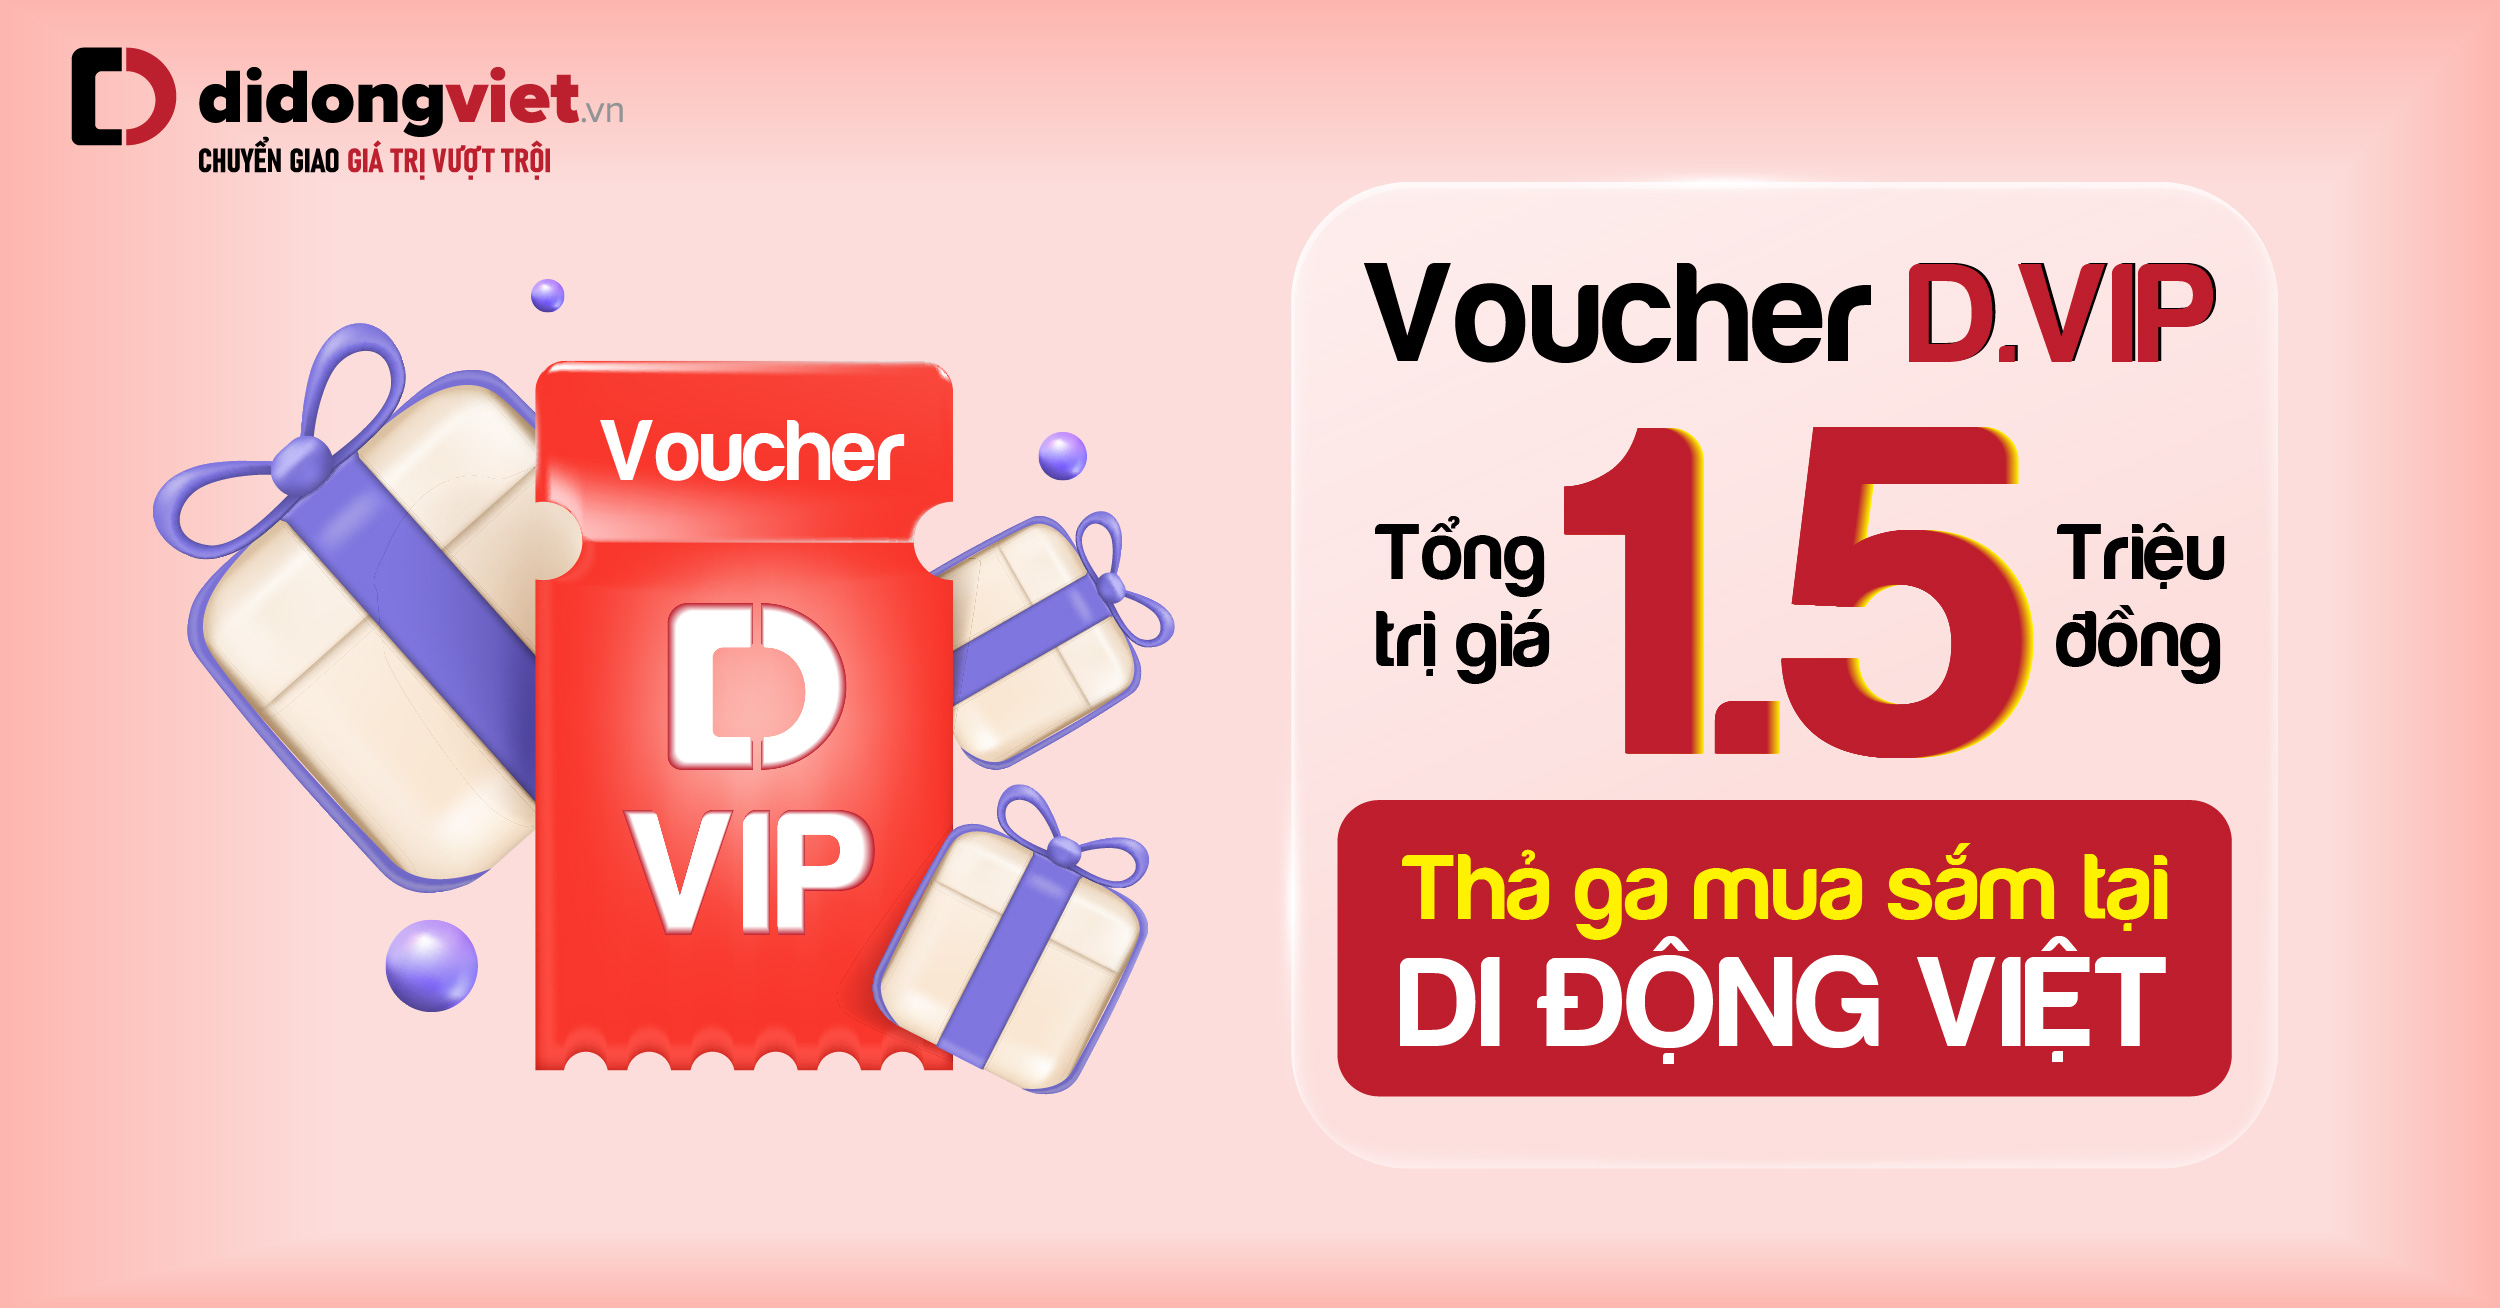 Siêu Voucher mua sắm D.VIP đã có mặt tại Di Động Việt